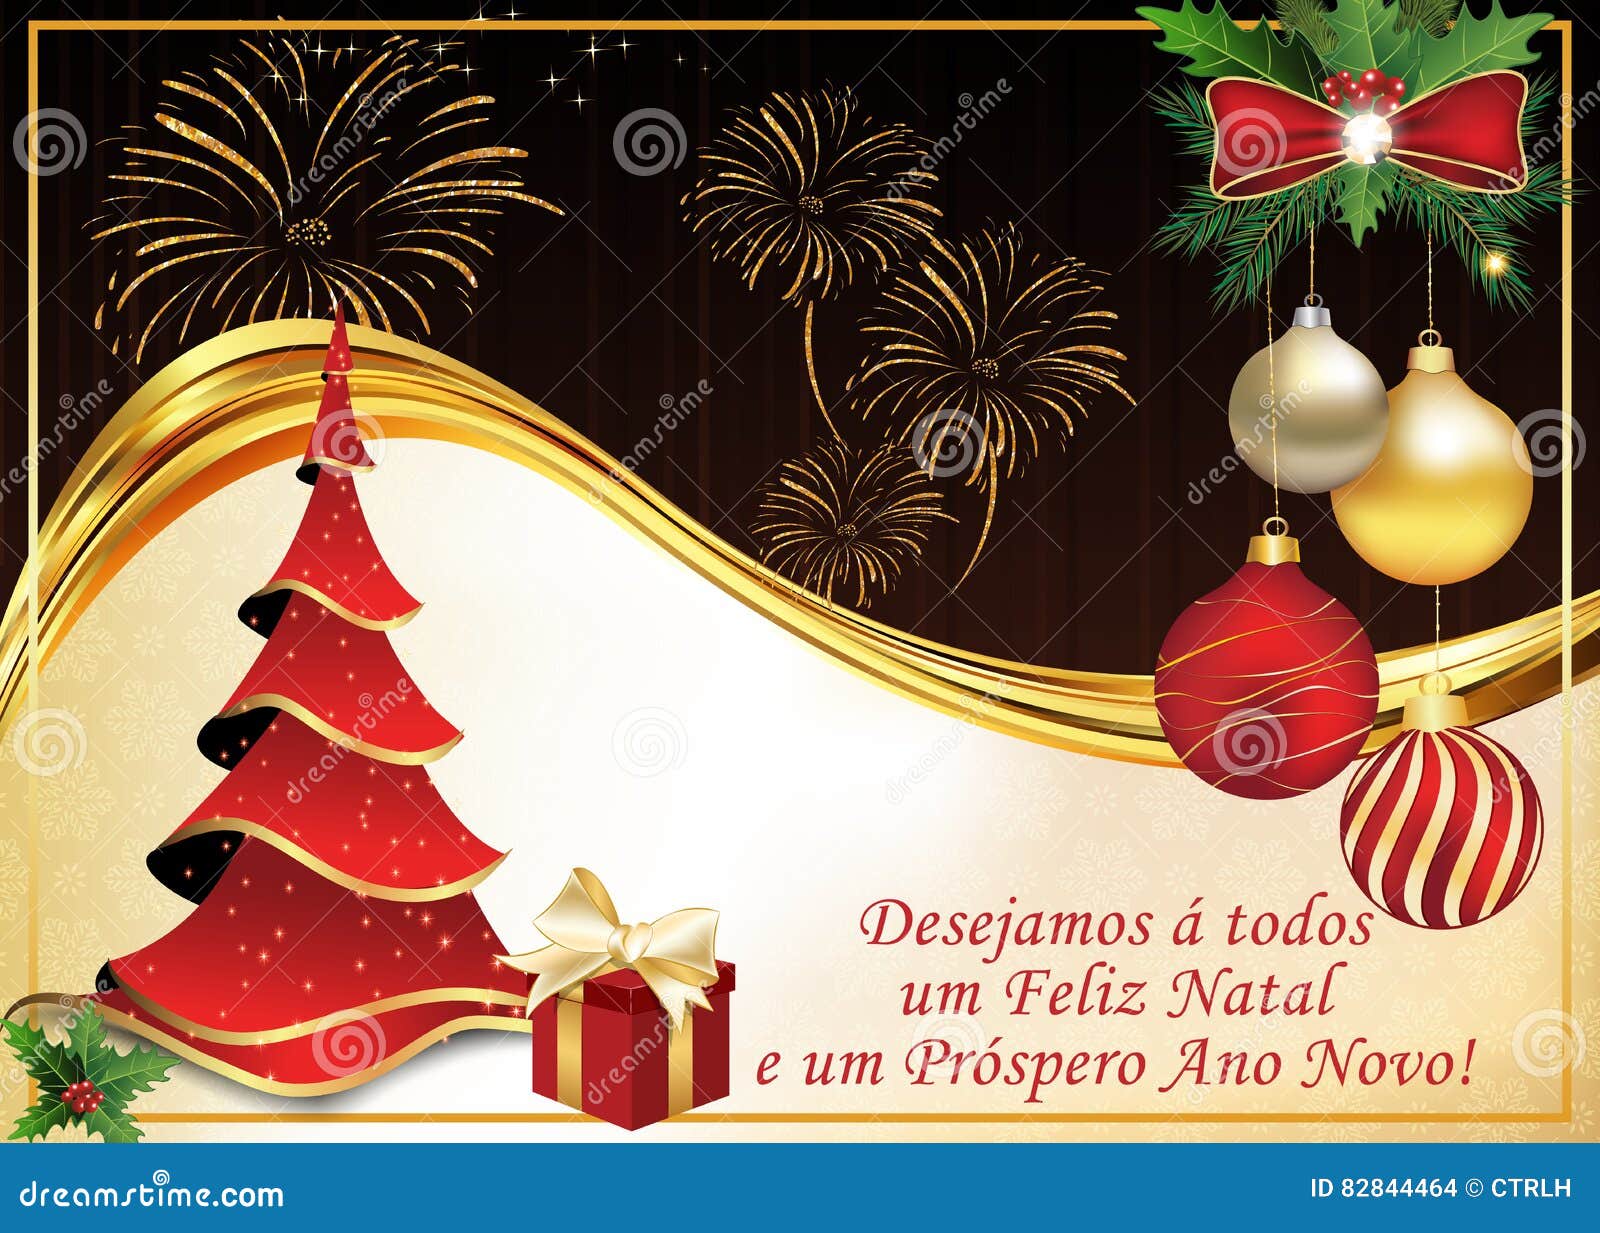 Buon Natale In Brasiliano.Cartolina D Auguri Portoghese Per Le Vacanze Invernali Illustrazione Di Stock Illustrazione Di Feste Desideri 82844464